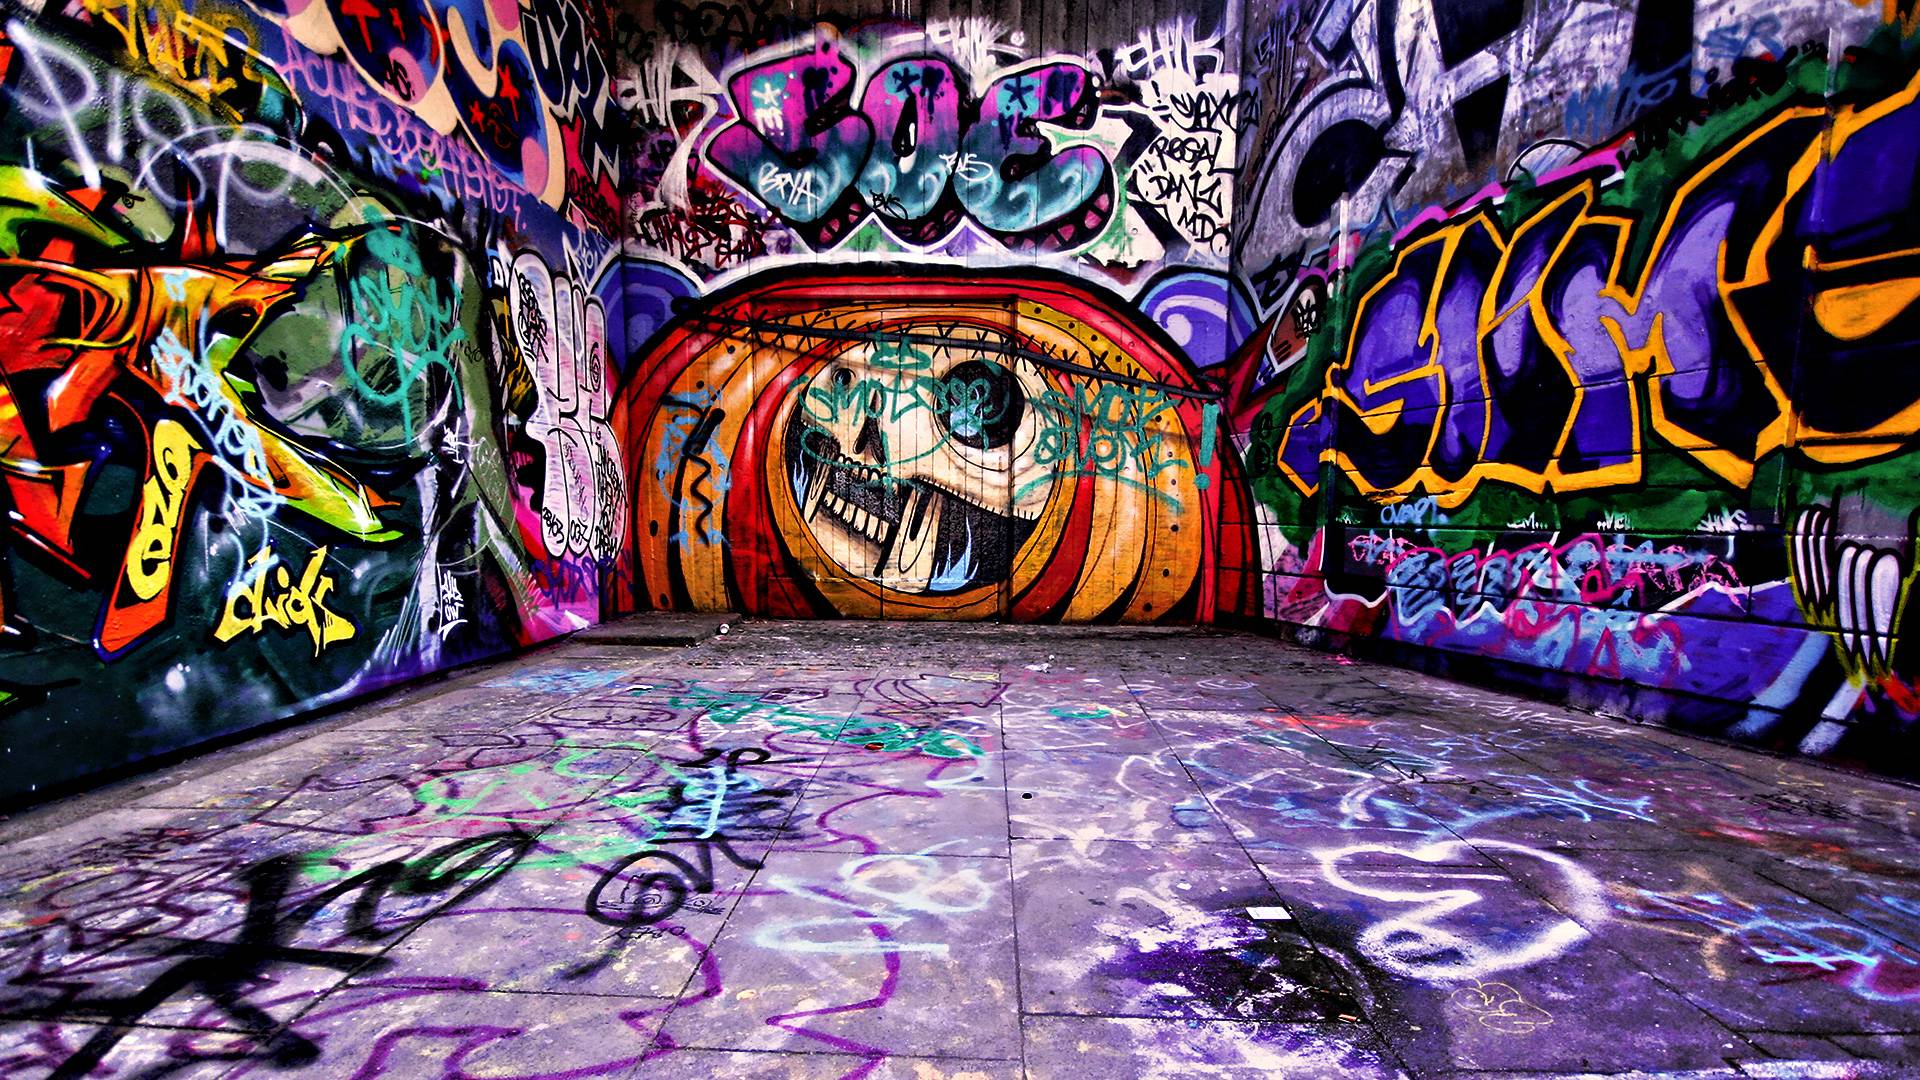 Hq Graffiti Wallpaper Download Graffiti 3D Indoors HD Wallpaper